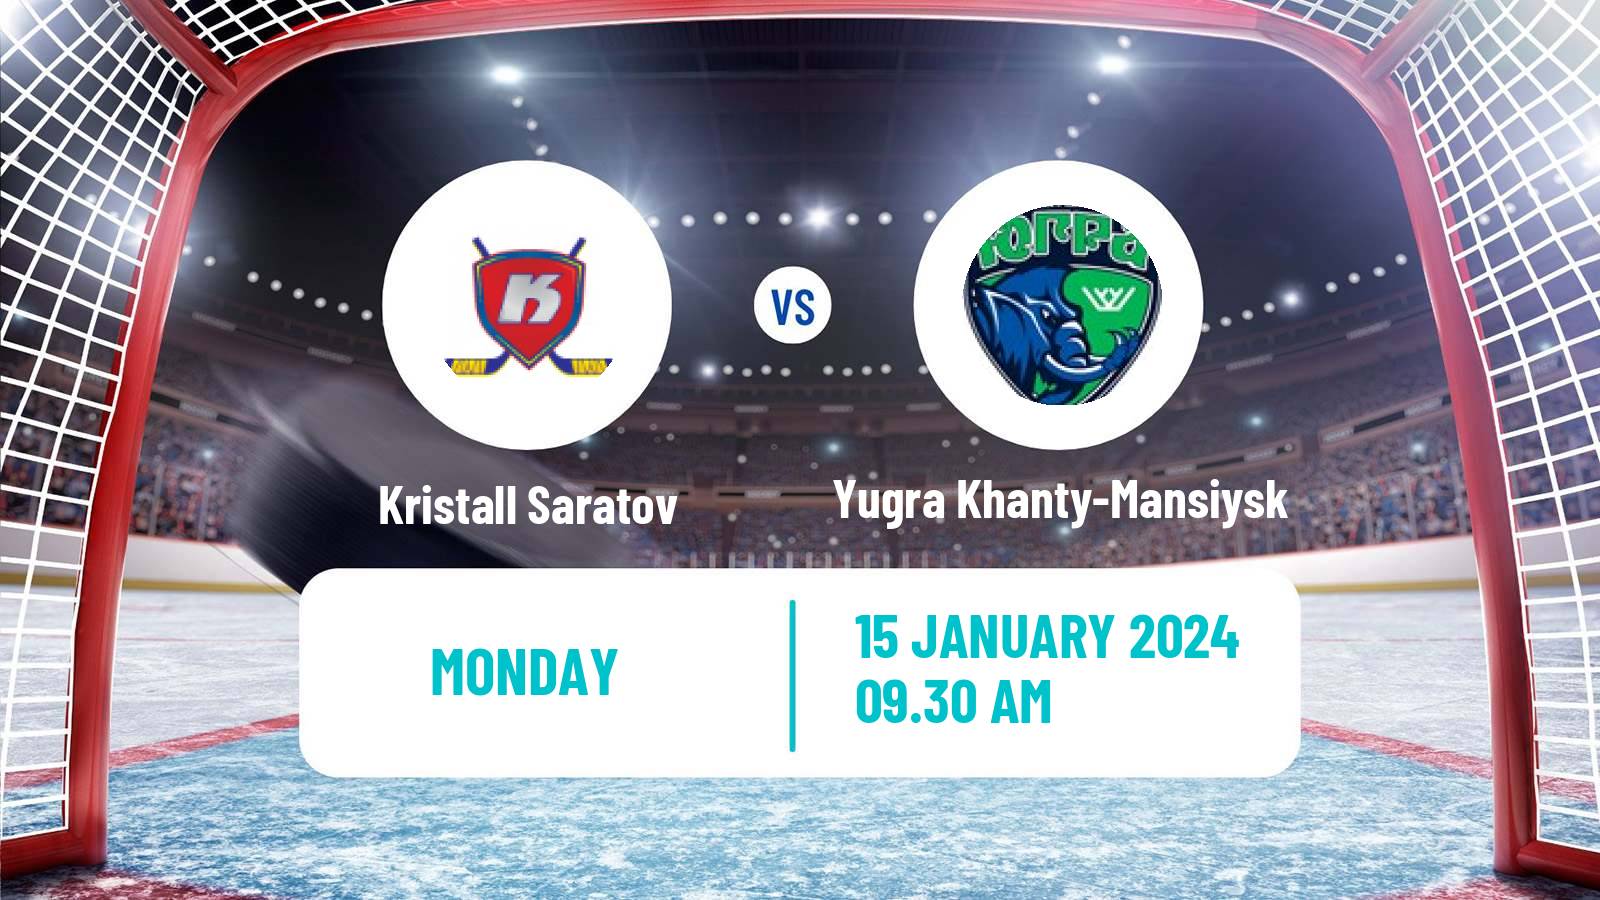 Hockey VHL Kristall Saratov - Yugra Khanty-Mansiysk